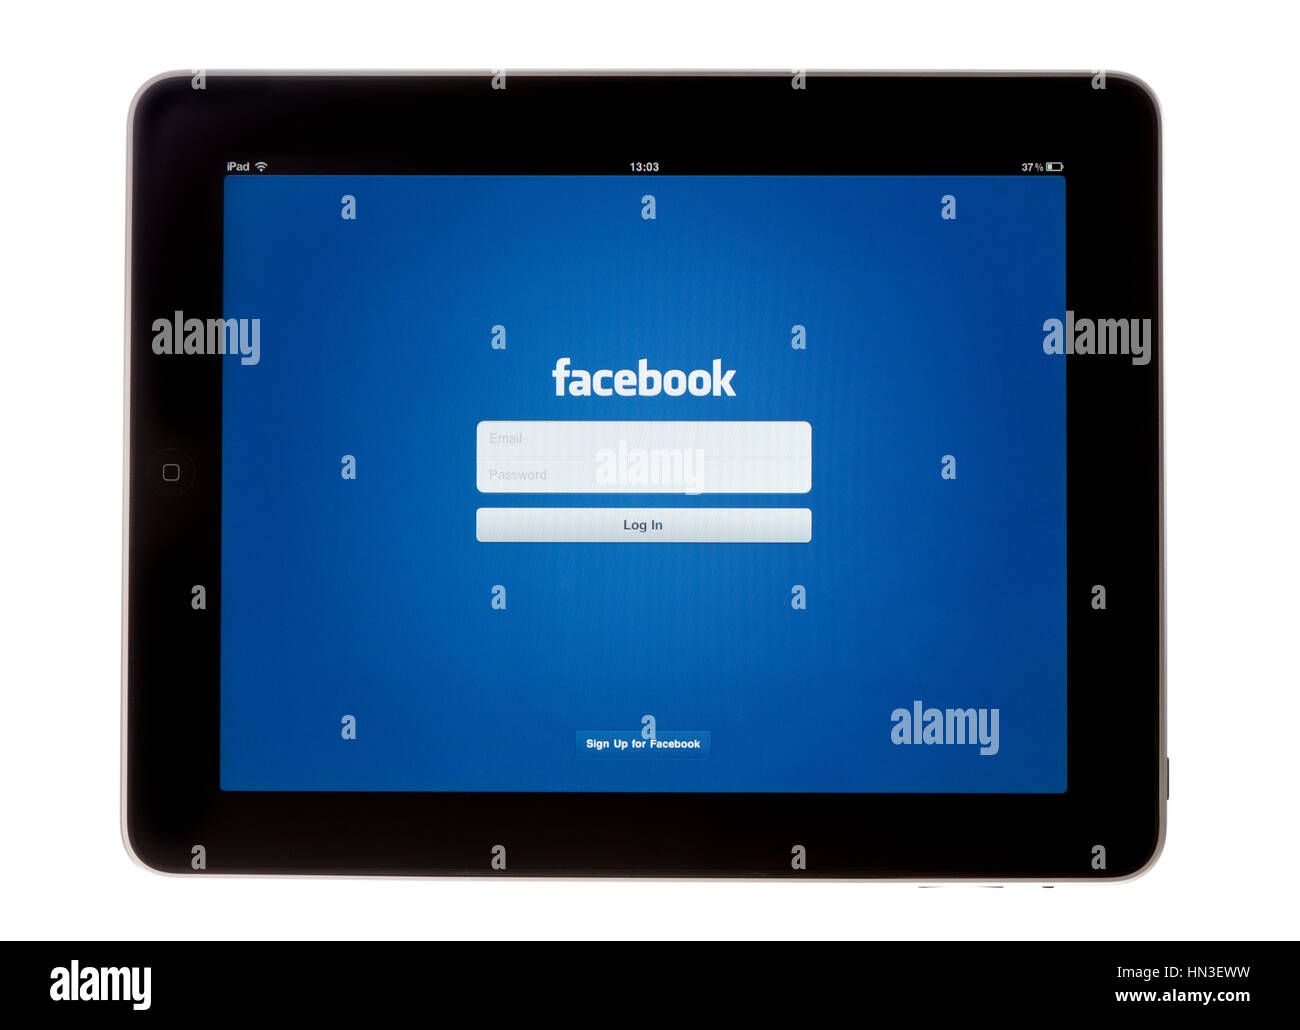 Bath, Großbritannien - 9. November 2011: An Apple iPad zeigt das Protokoll im Bildschirm der Facebook-App, erschossen vor einem weißen Hintergrund. Die sozialen medi Stockfoto